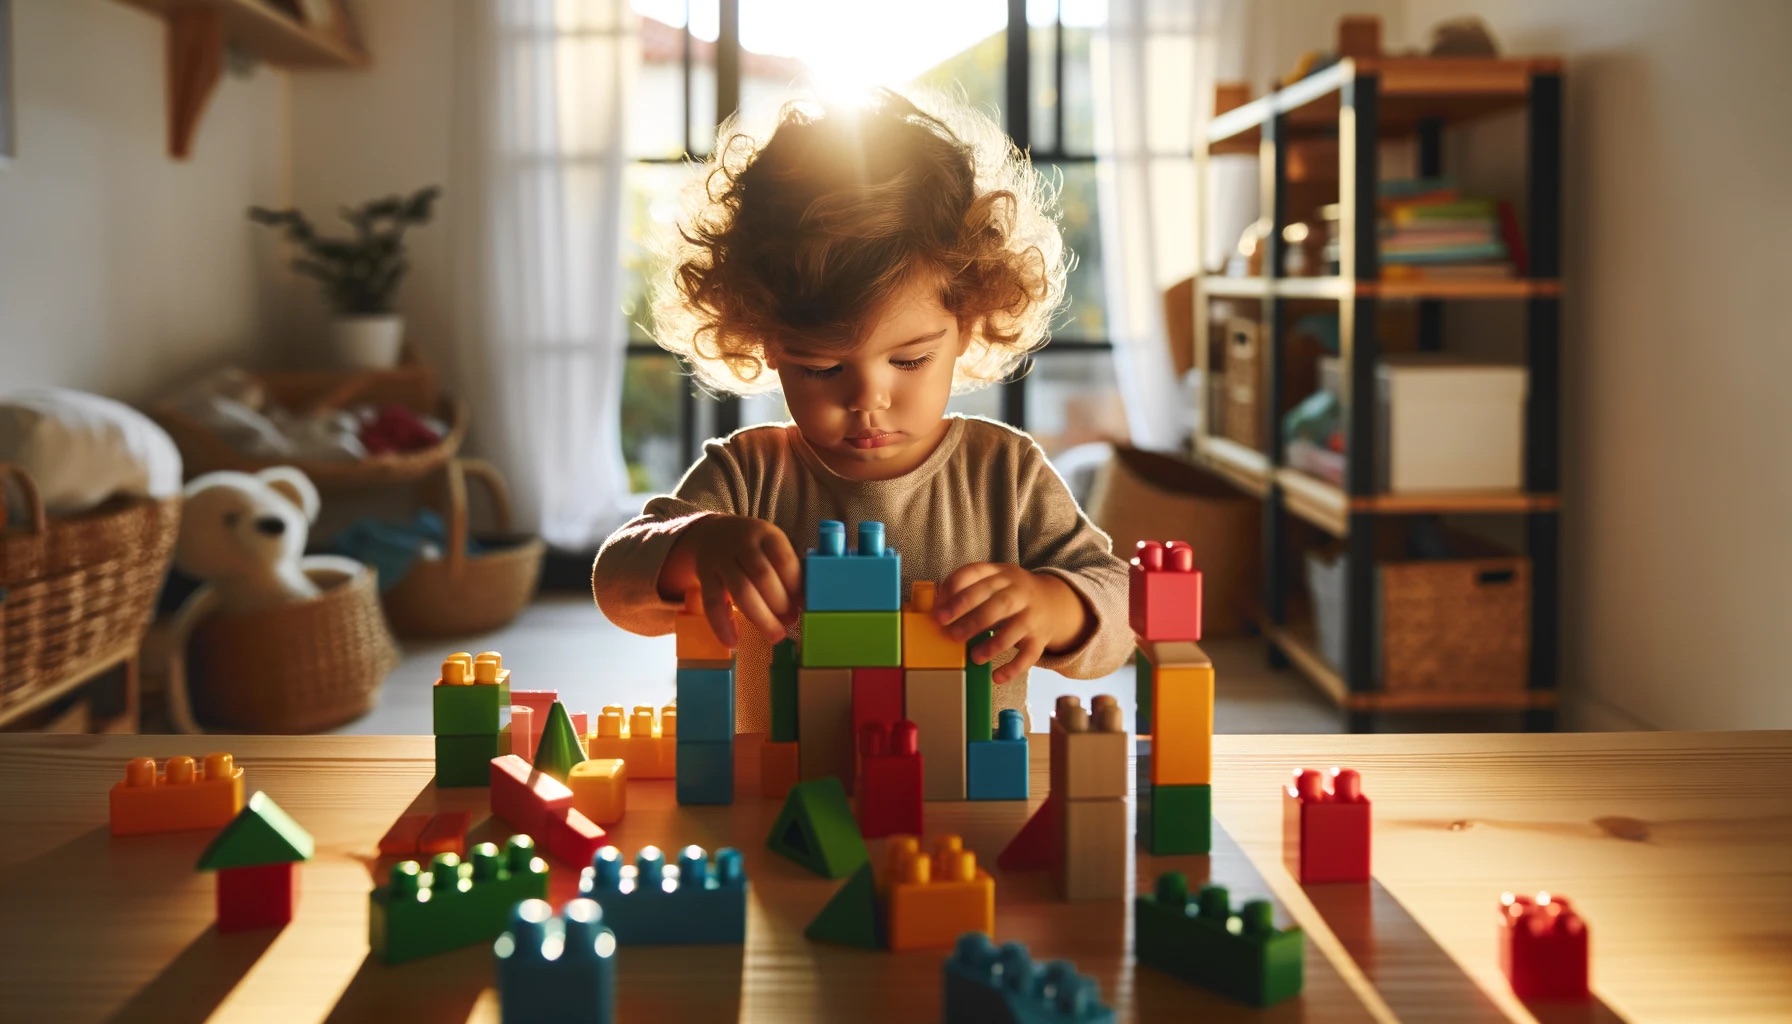 Milyen játékok okozzák a legnagyobb örömet egy 1,5 éves gyereknek?